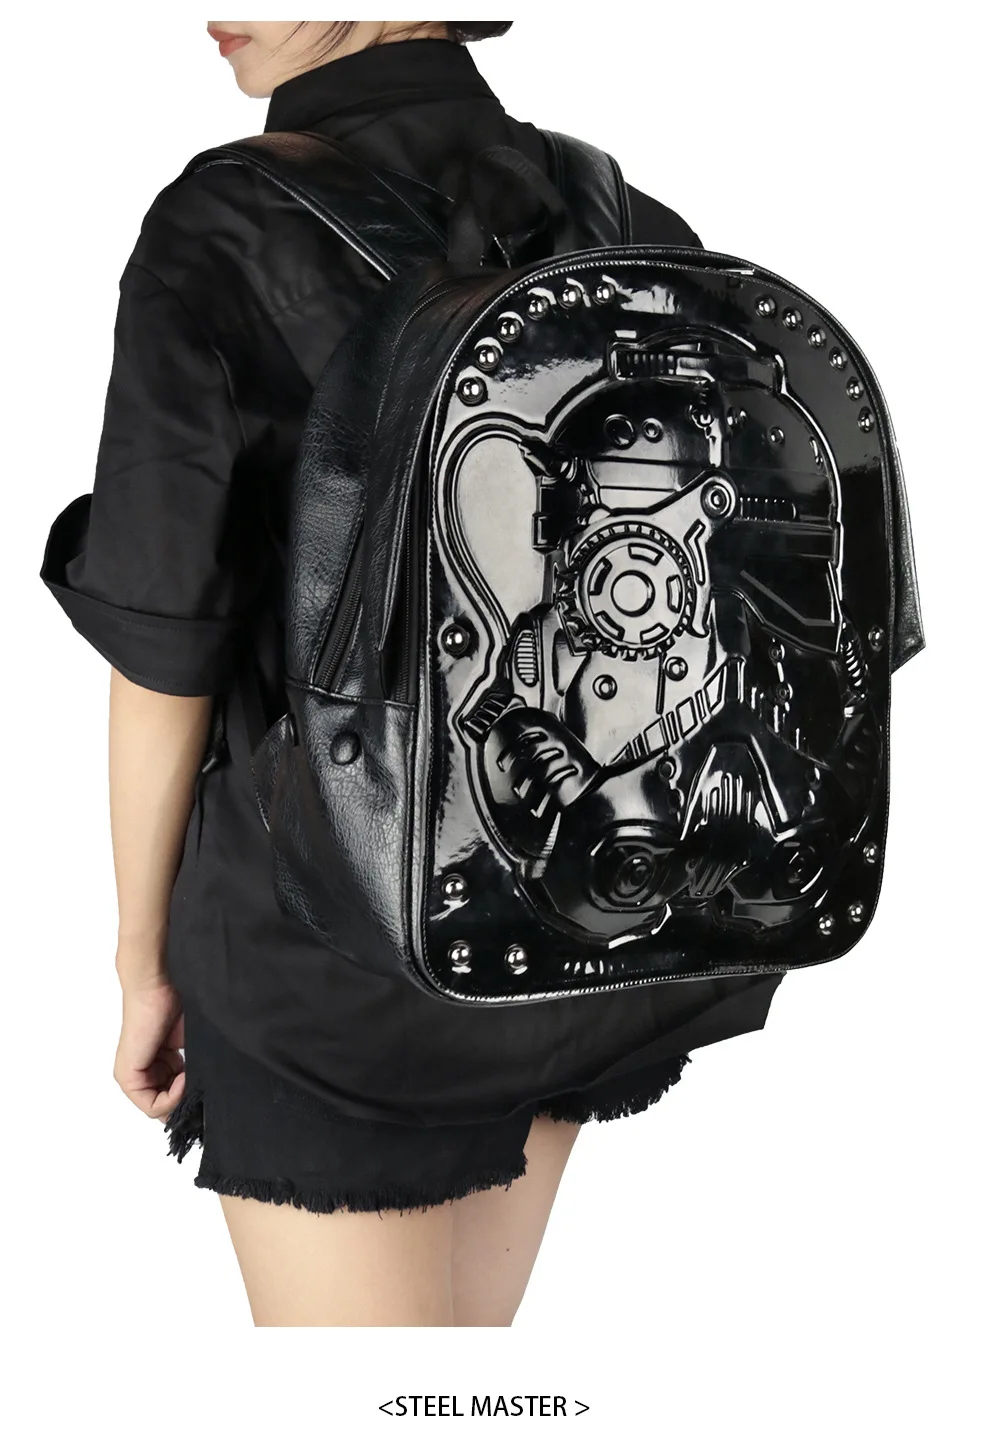 Новинка, черный рюкзак из искусственной кожи в стиле панк для мужчин и женщин, большой рюкзак для мотоциклистов, дорожная сумка, повседневный рюкзак в стиле стимпанк, школьная сумка